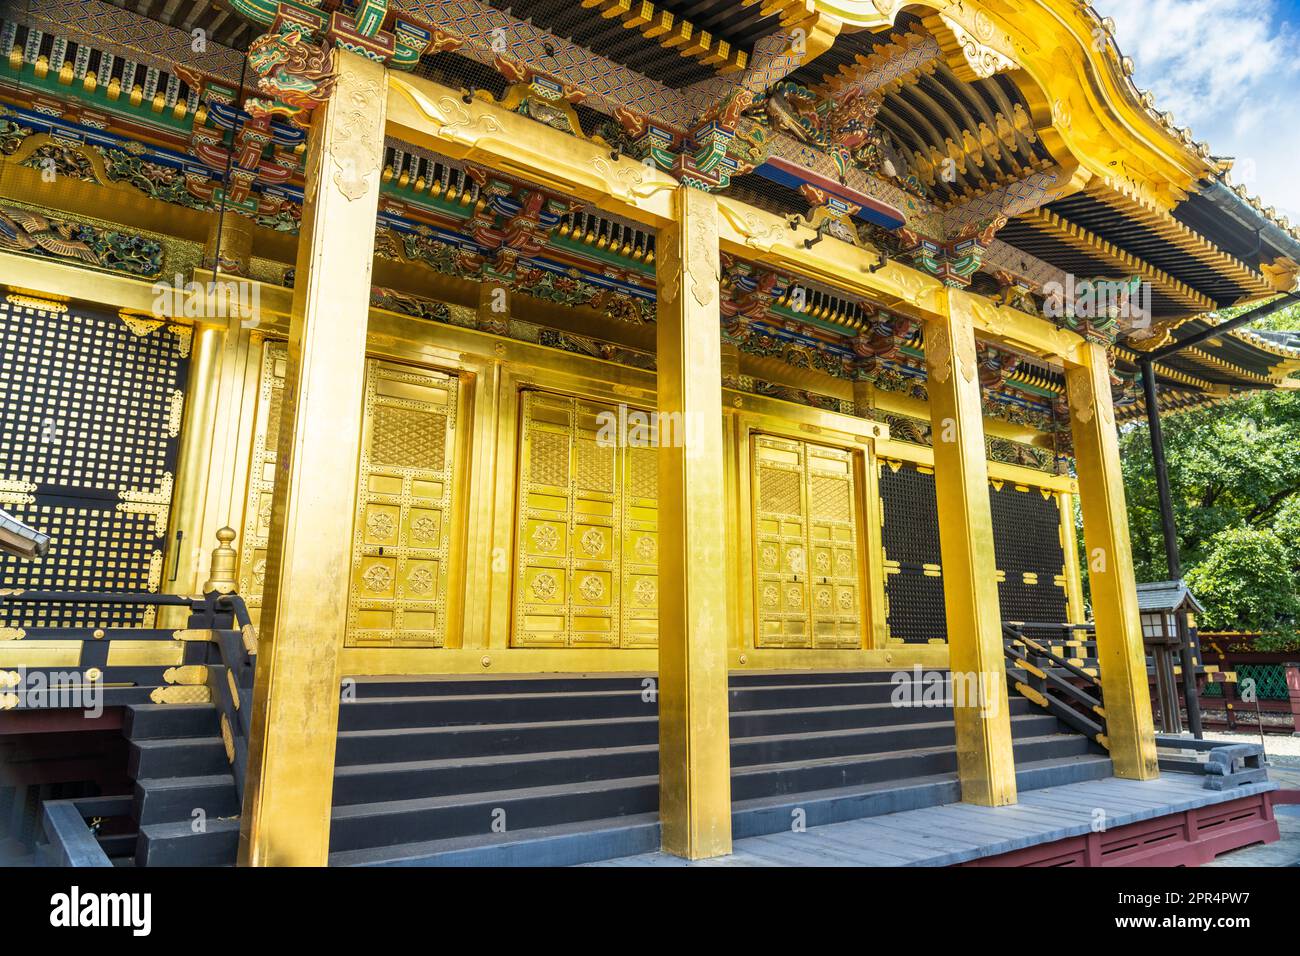 Le sanctuaire Ueno Tosho-gu se trouve dans le parc Ueno, Tokyo, Japon. Le sanctuaire a été construit en 1627 et est considéré comme un grand exemple de l'architecture de Shinto de la période Edo. Banque D'Images